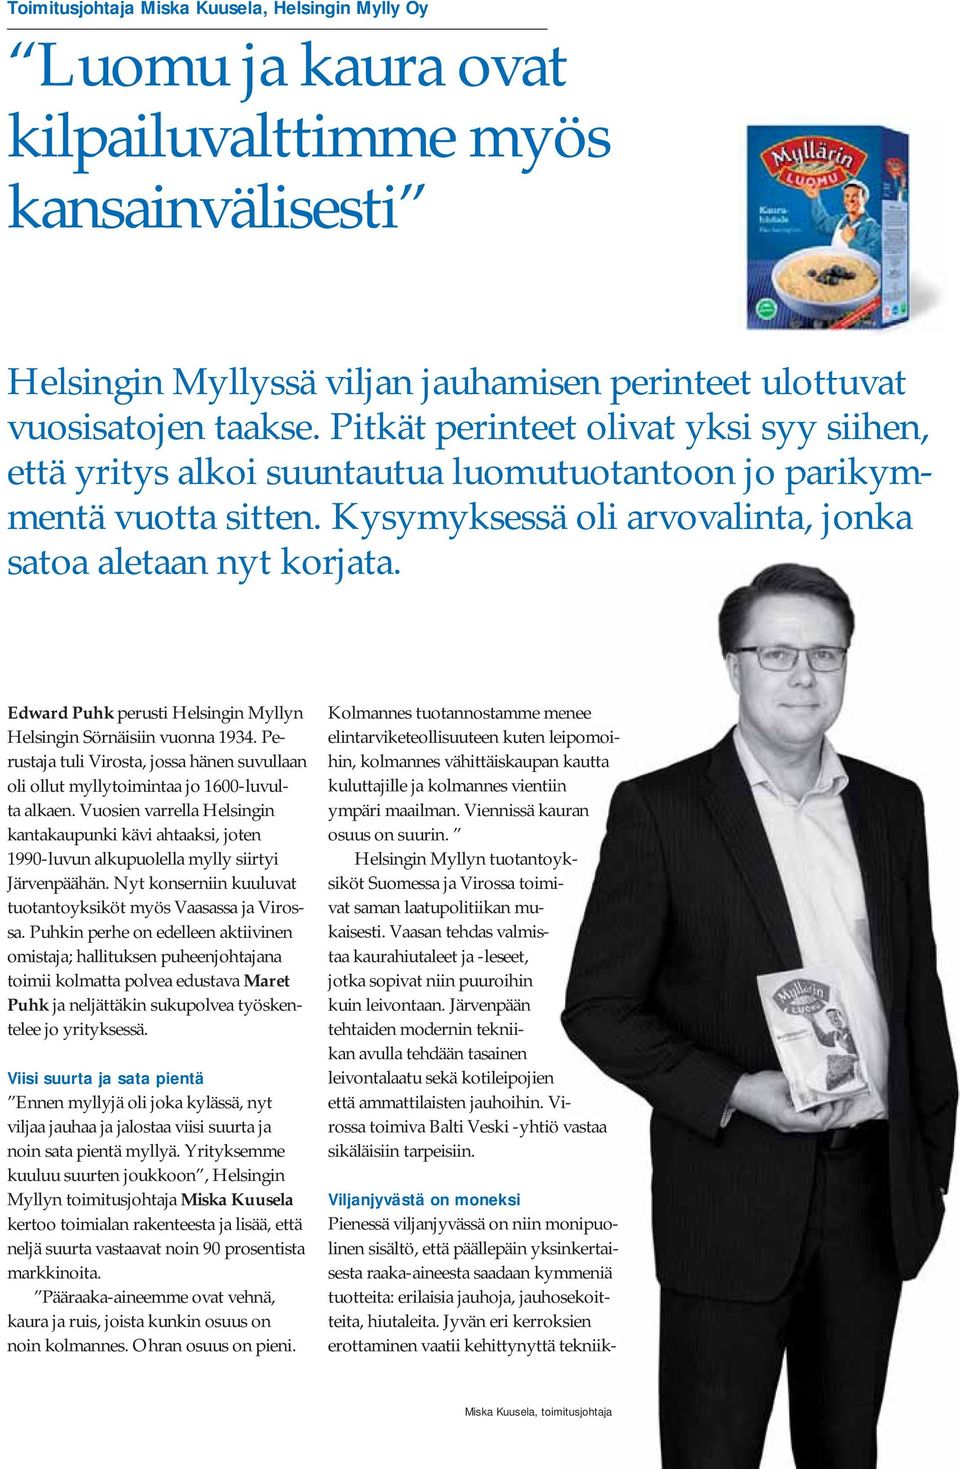 Edward Puhk perusti Helsingin Myllyn Helsingin Sörnäisiin vuonna 1934. Perustaja tuli Virosta, jossa hänen suvullaan oli ollut myllytoimintaa jo 1600-luvulta alkaen.